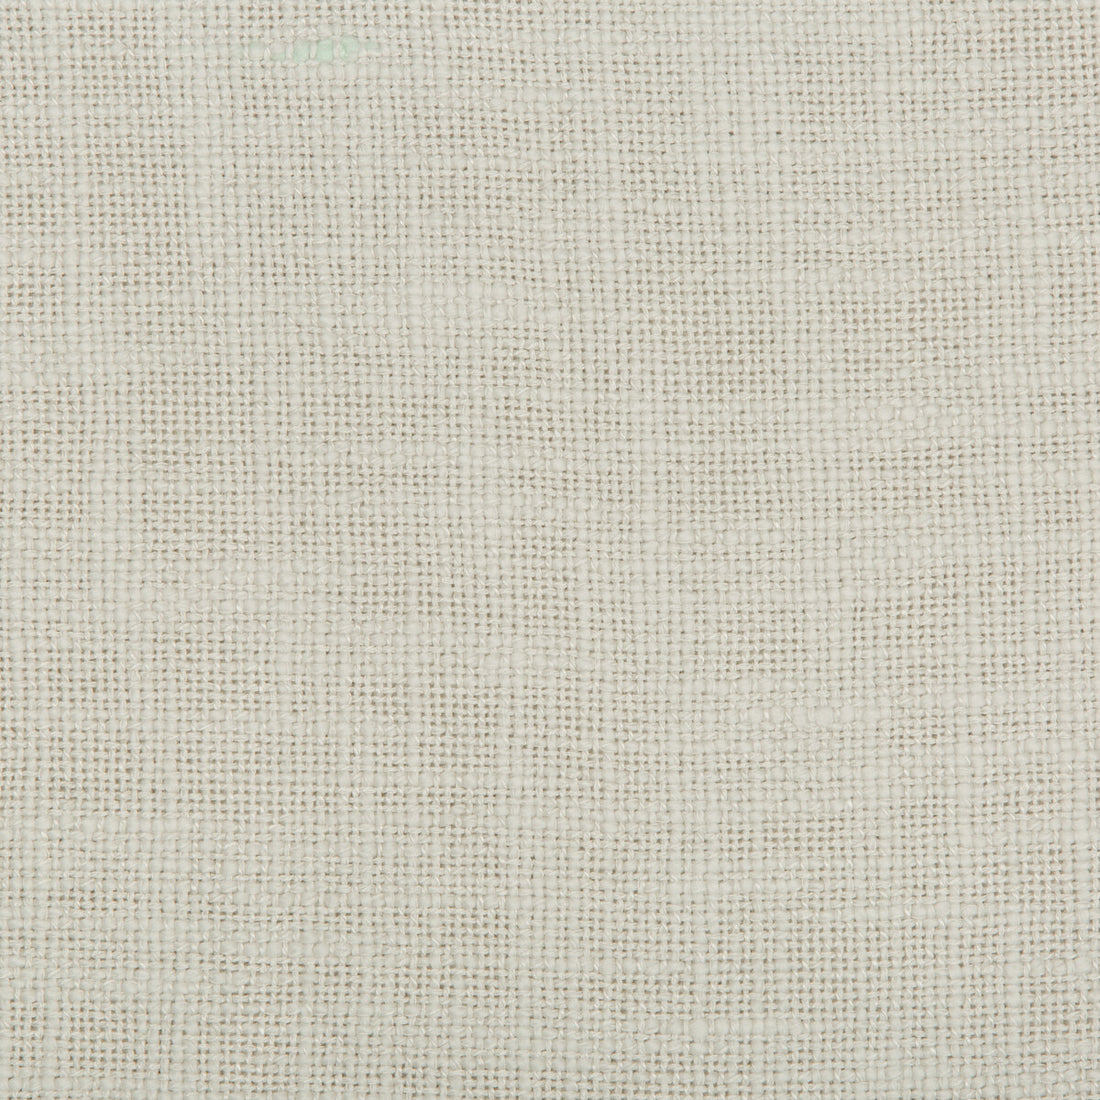 Kravet Design fabric in 4585-11 color - pattern 4585.11.0 - by Kravet Design